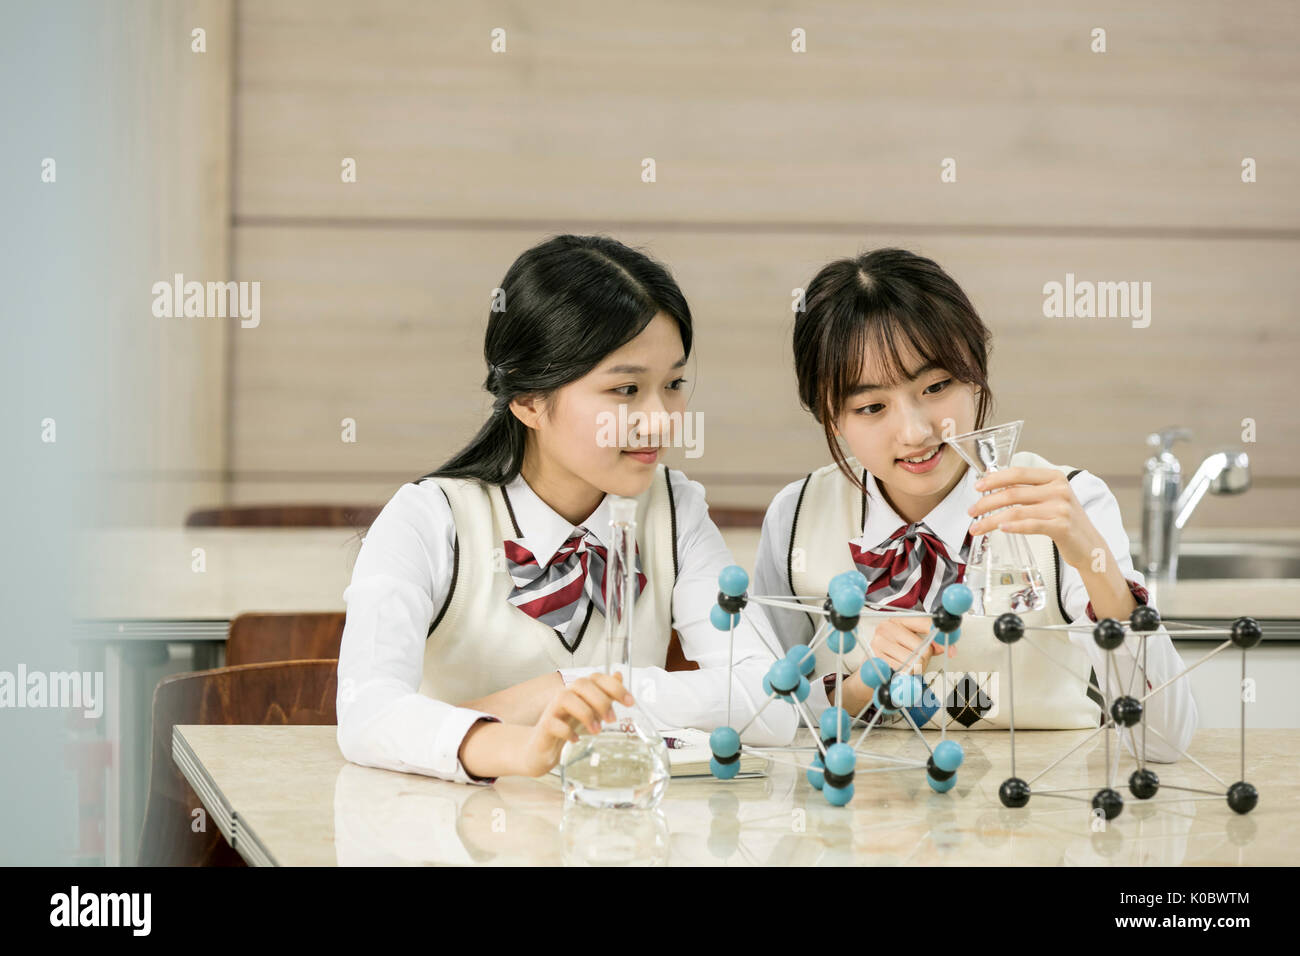 Portrait of smiling deux filles de l'école de science de l'apprentissage Banque D'Images